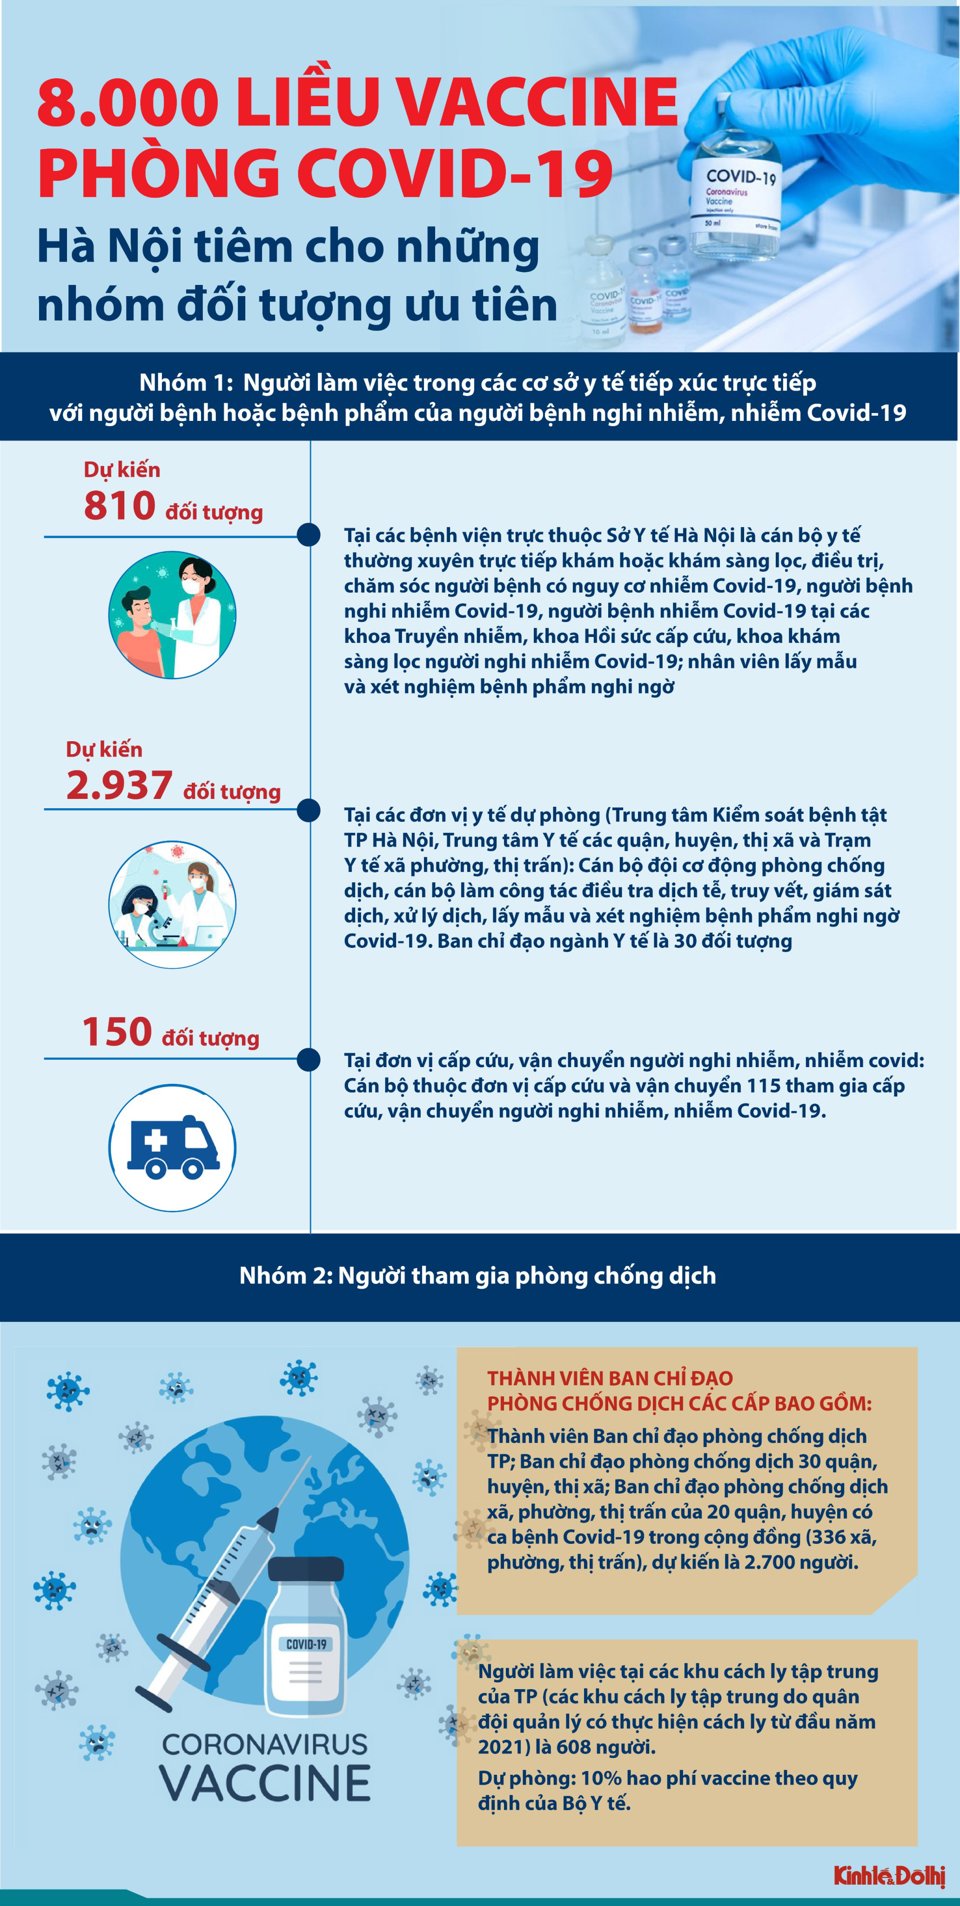 [Infographic] 8.000 liều vaccine Covid-19 của Hà Nội được phân bổ như thế nào? - Ảnh 1